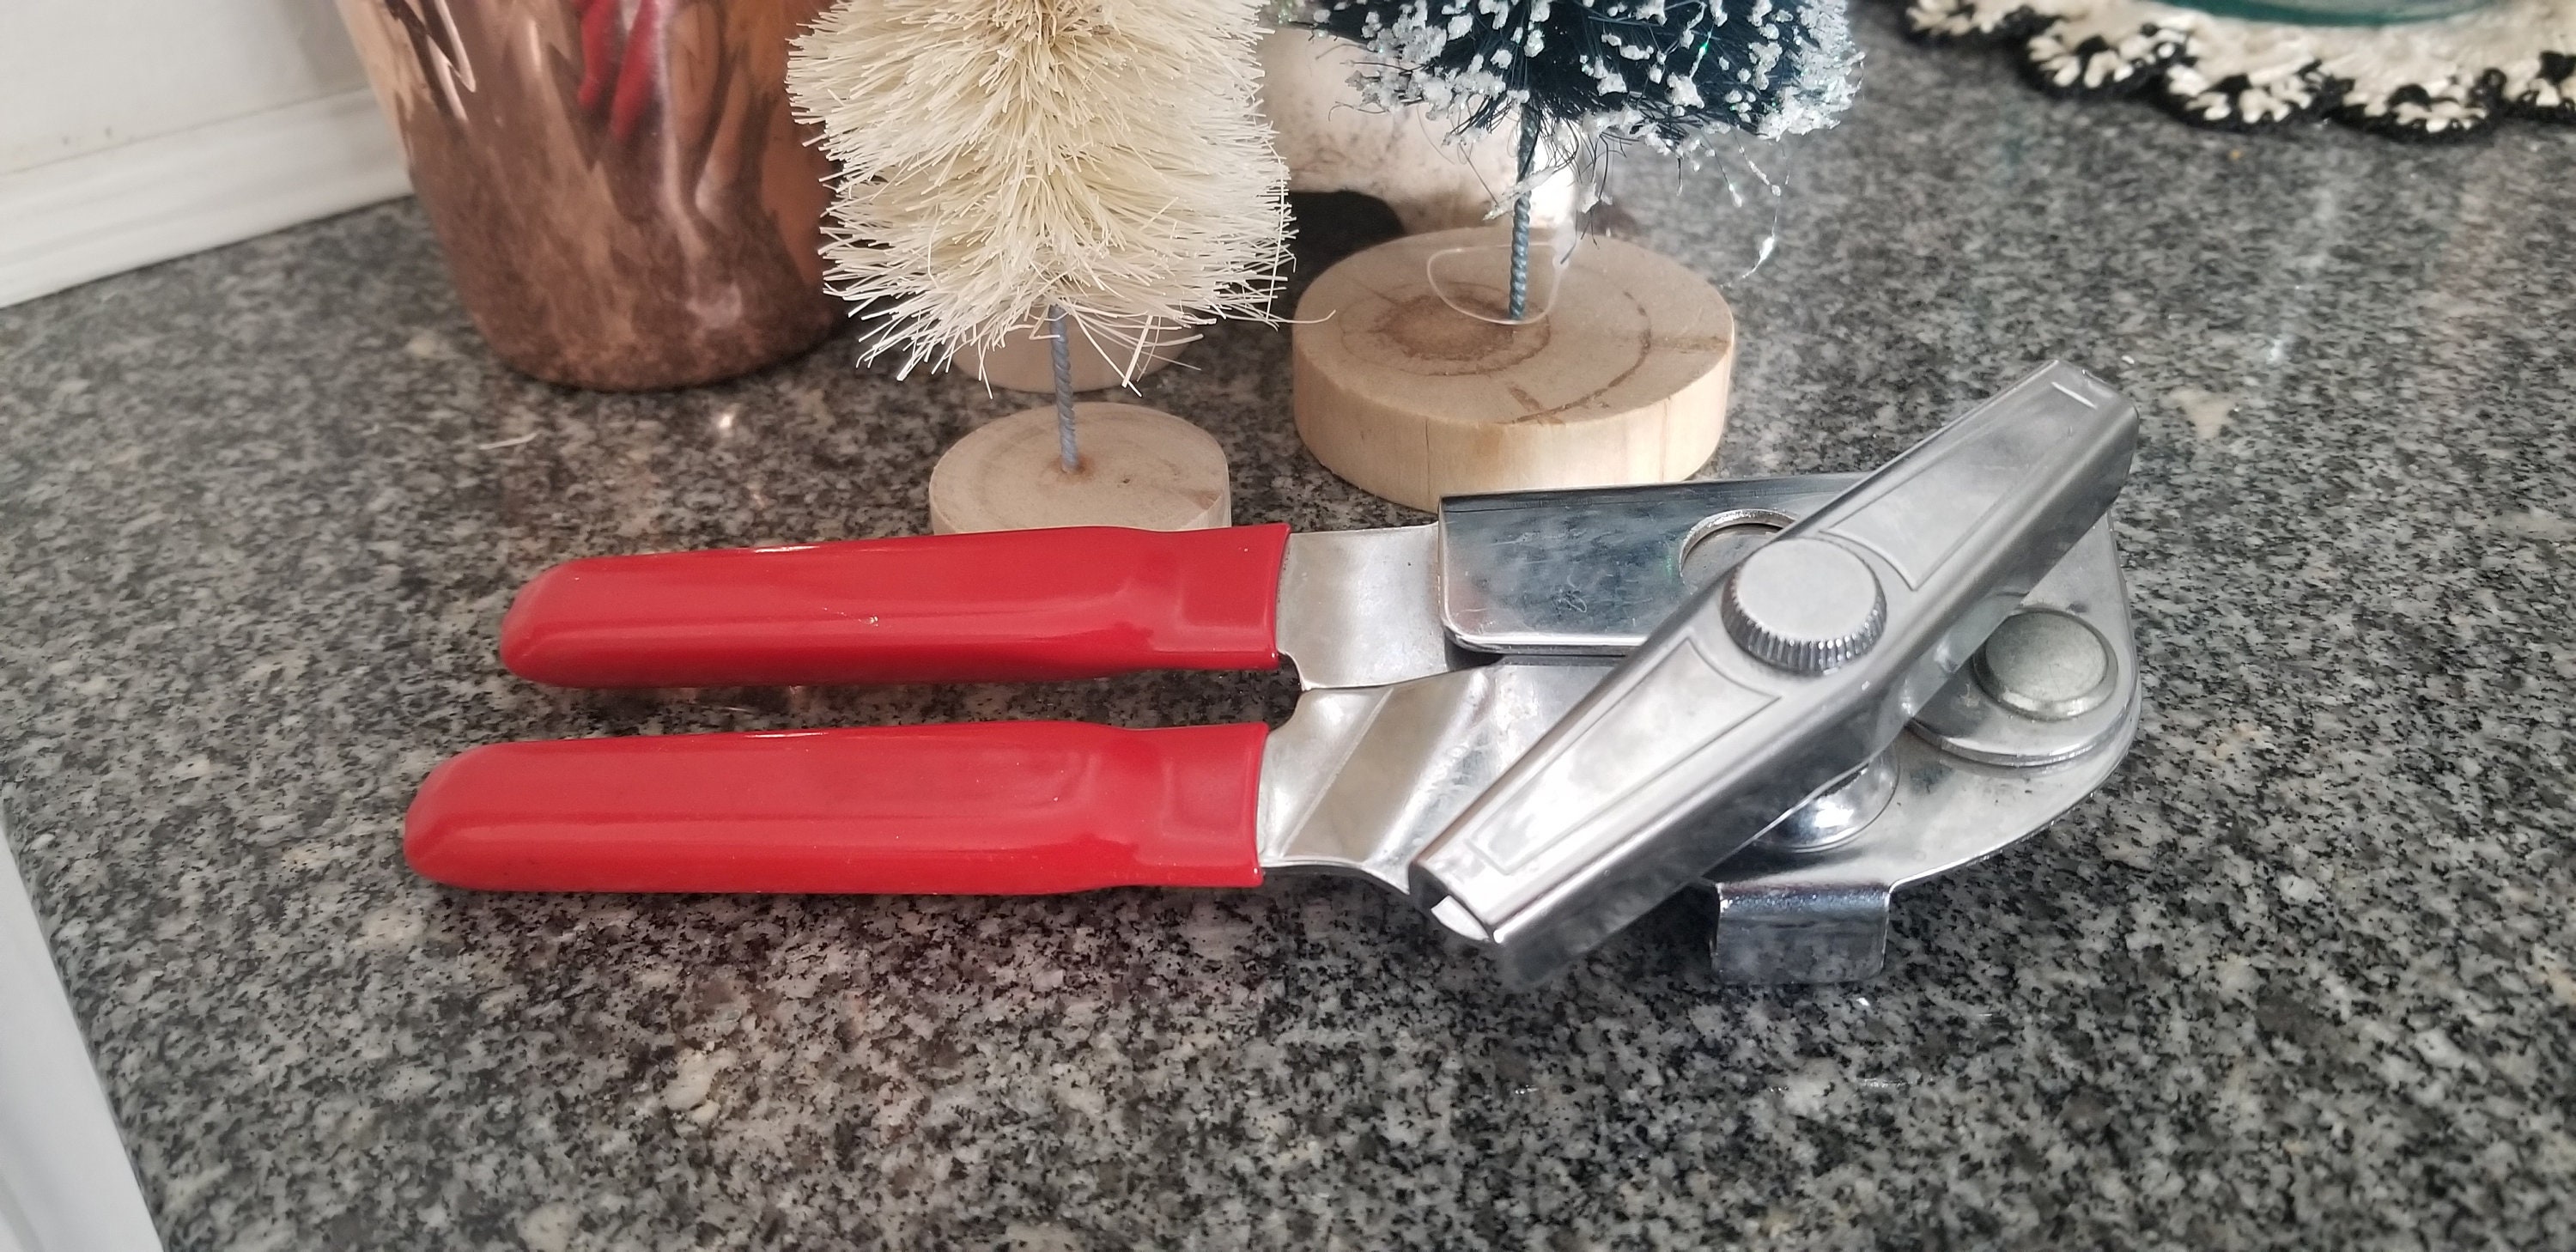 Vintage Swing-Away Lid Jar Opener Red Handle Kitchen Gadget Tool Utensil